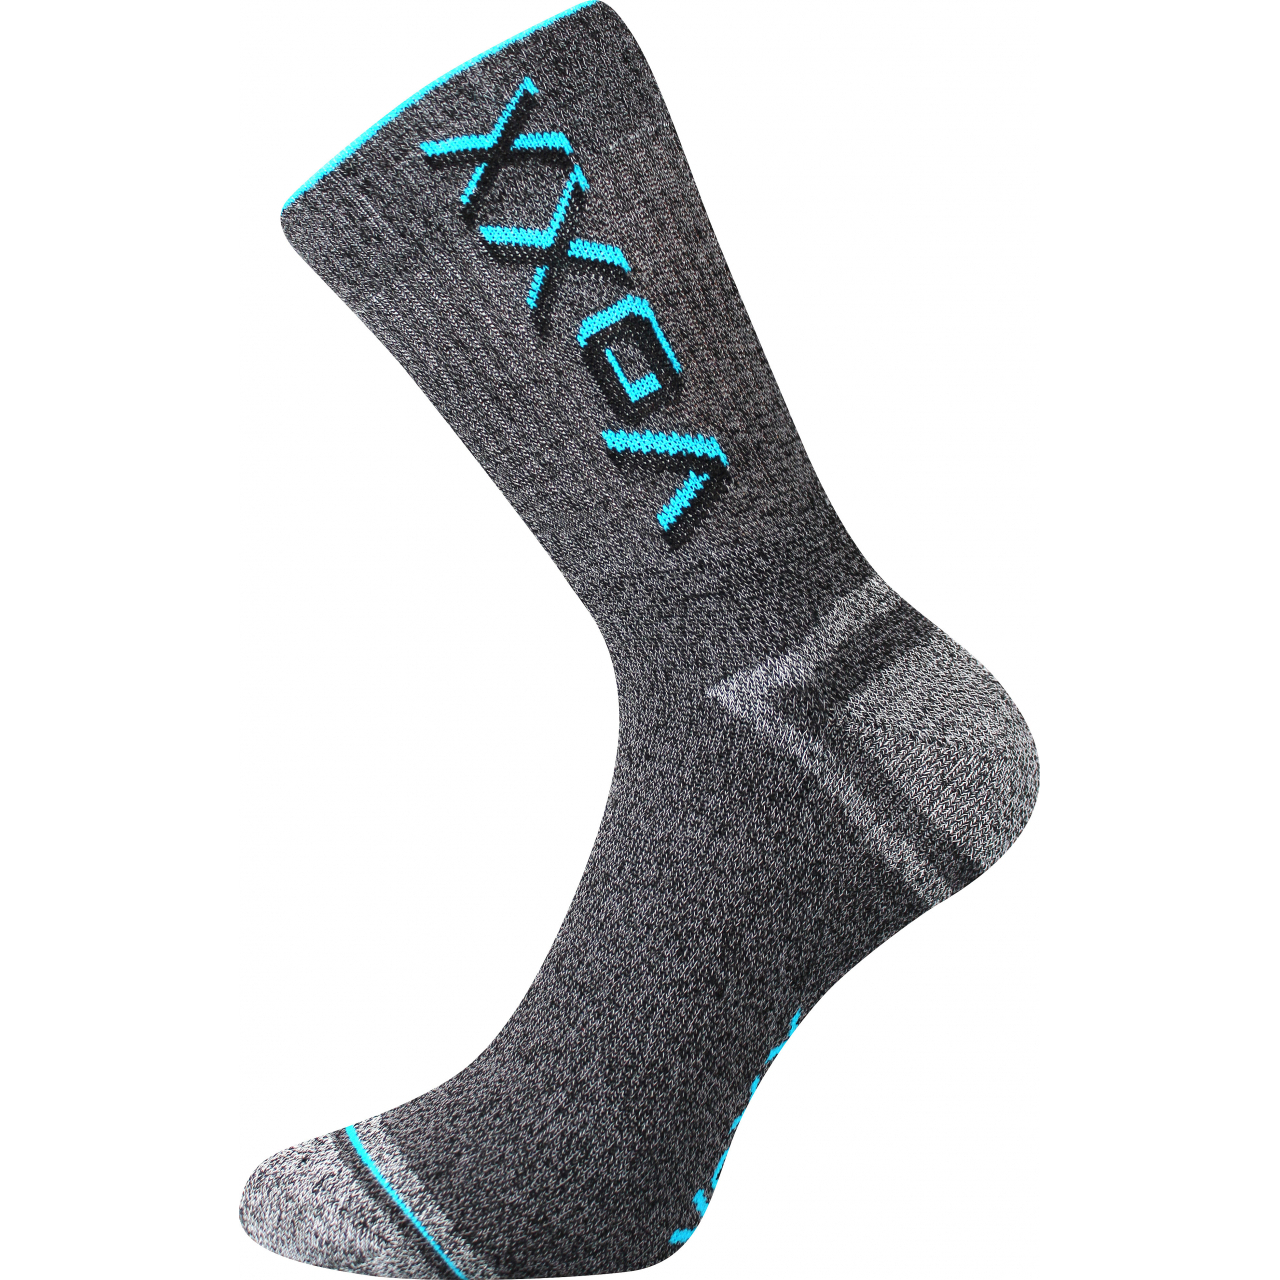 Ponožky unisex froté Voxx Hawk - šedé-tyrkysové, 43-46